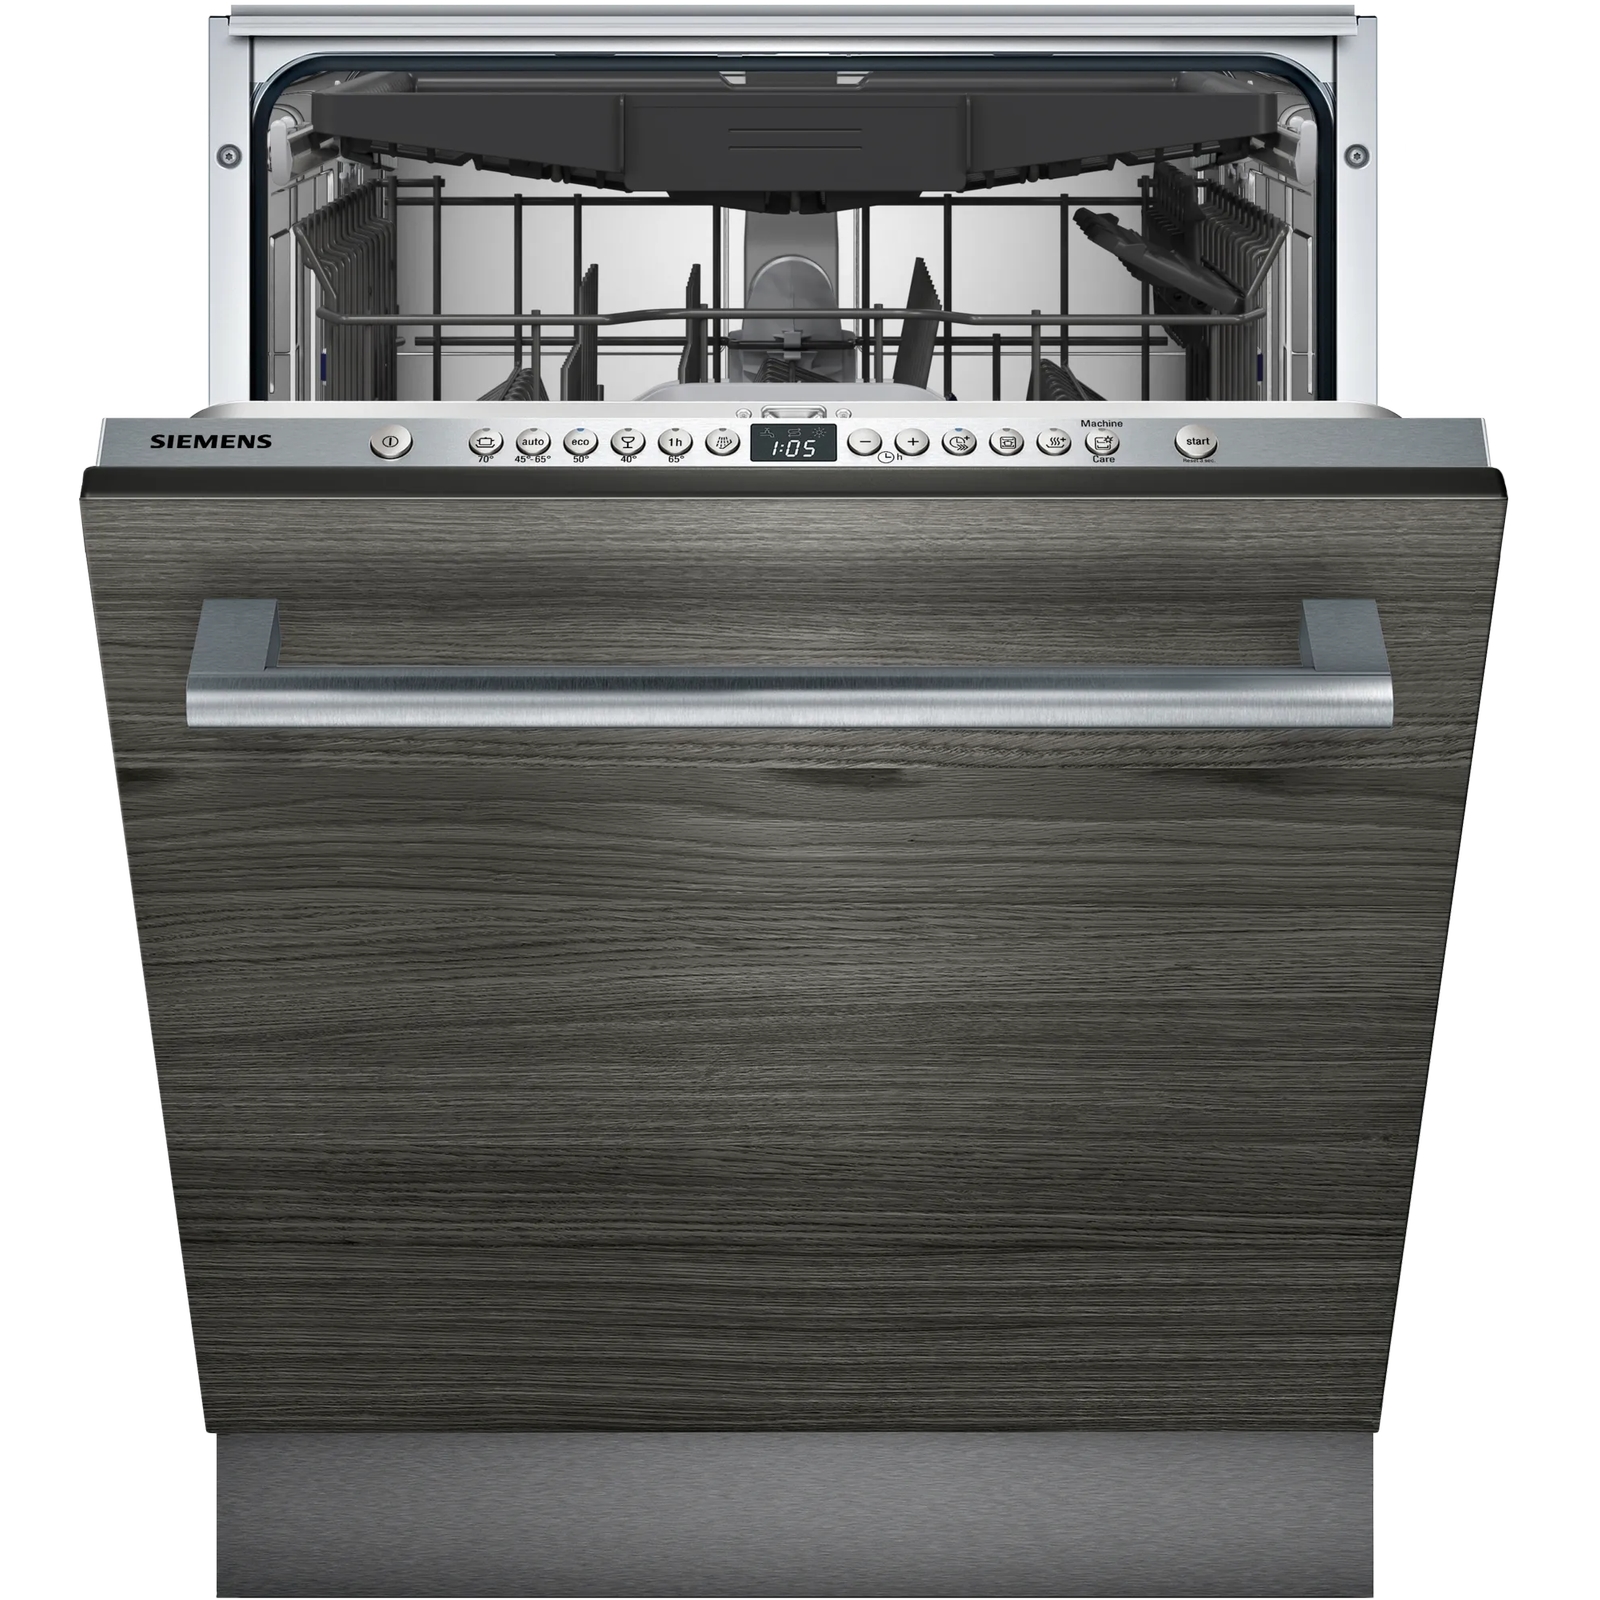 Встраиваемая посудомоечная машина Siemens SN636X06KE встраиваемая посудомоечная машина siemens sn636x06ke